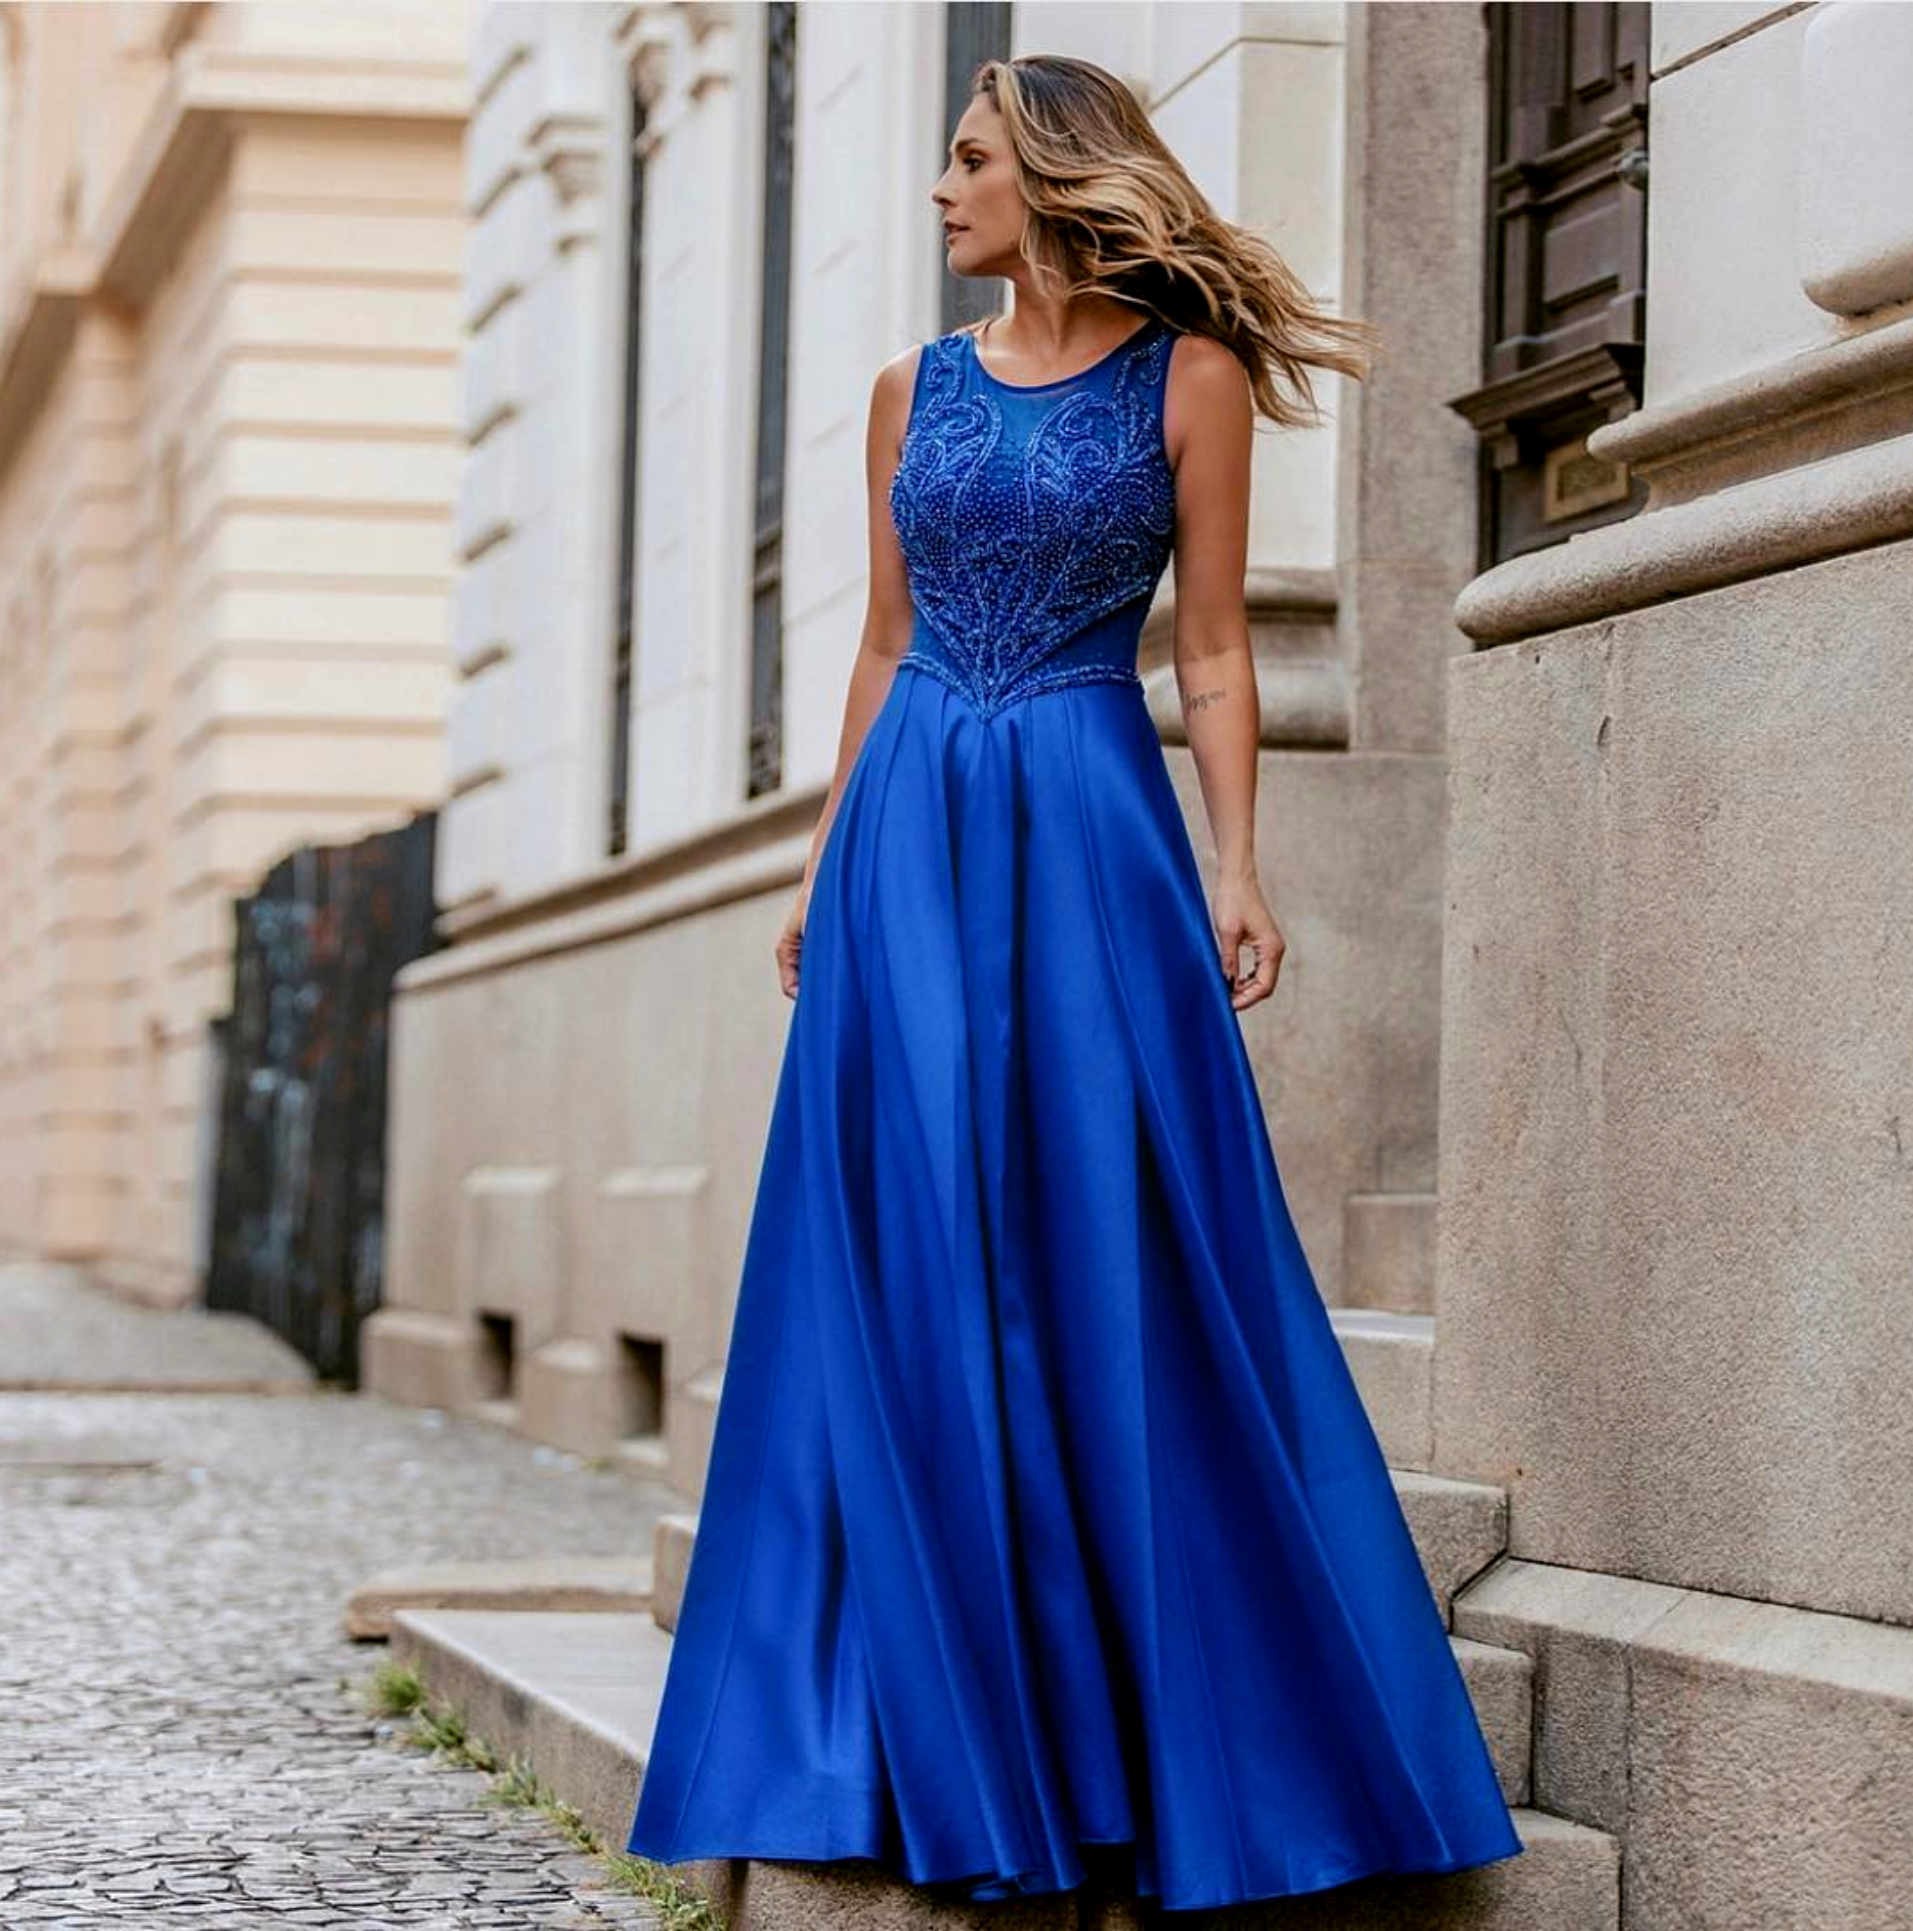 Camello obturador Sui Bonitos y elegantes vestidos azul royal para tu graduación